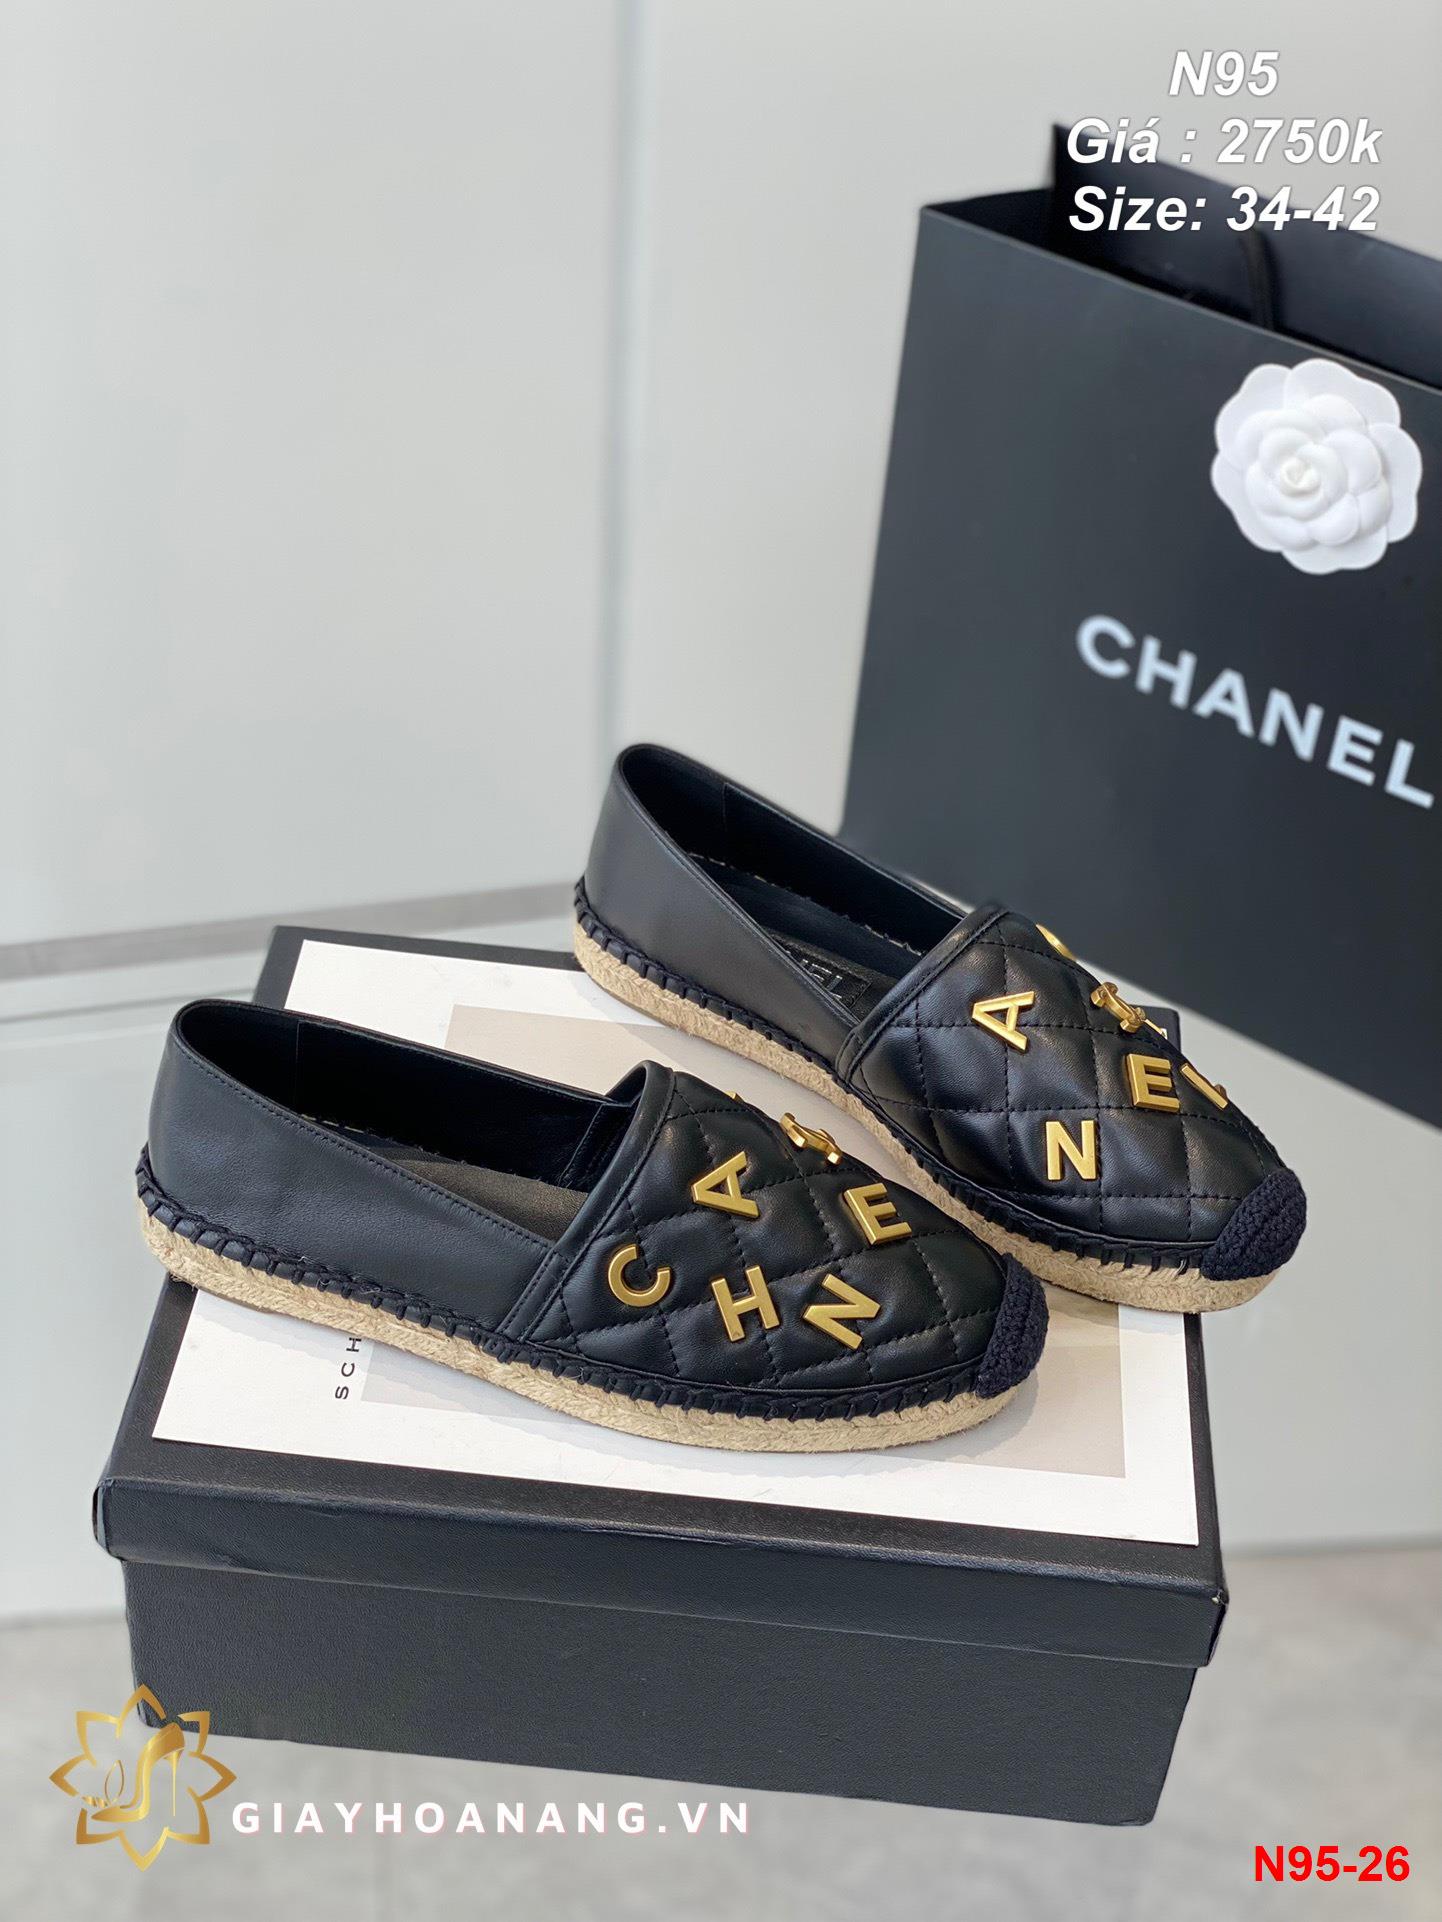 N95-26 Chanel giày lười siêu cấp